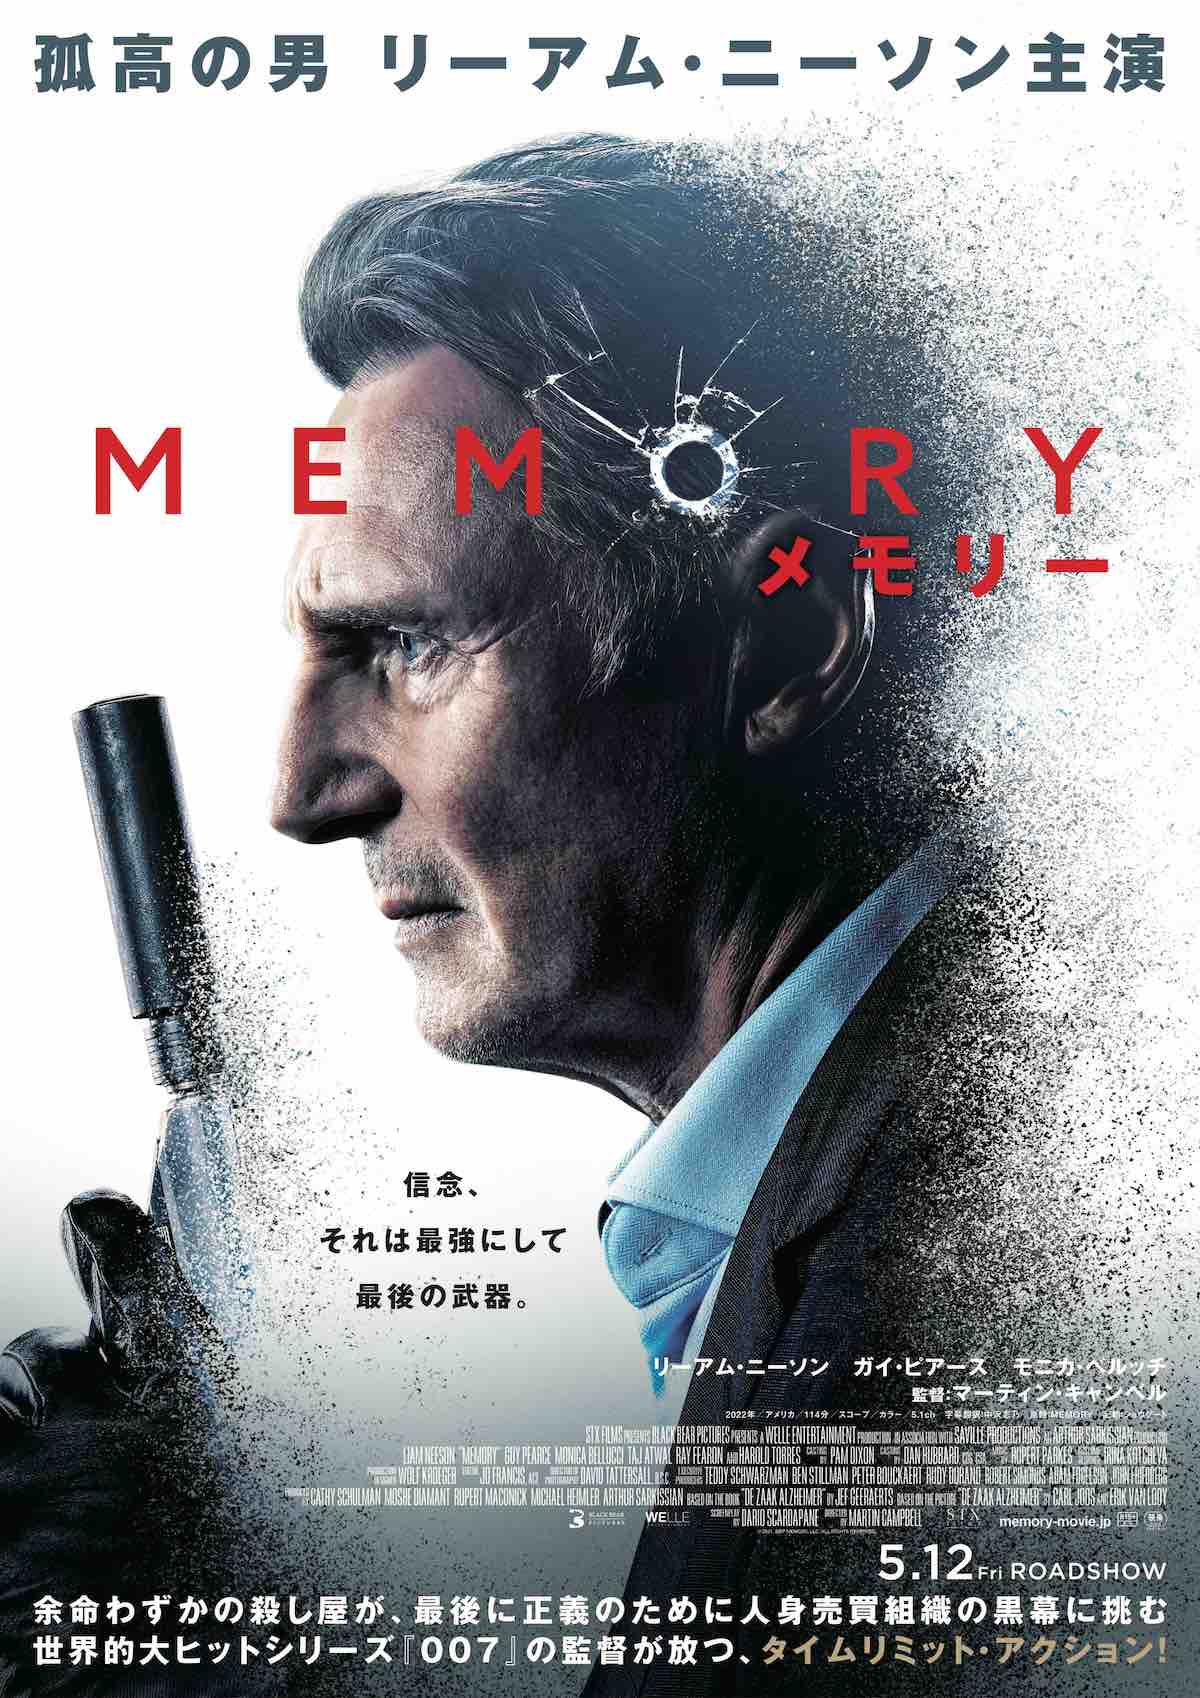 リーアム・ニーソン主演最新作『MEMORY メモリー』が日本国公開へ—今度は余命わずかの完璧な殺し屋、予告映像も解禁